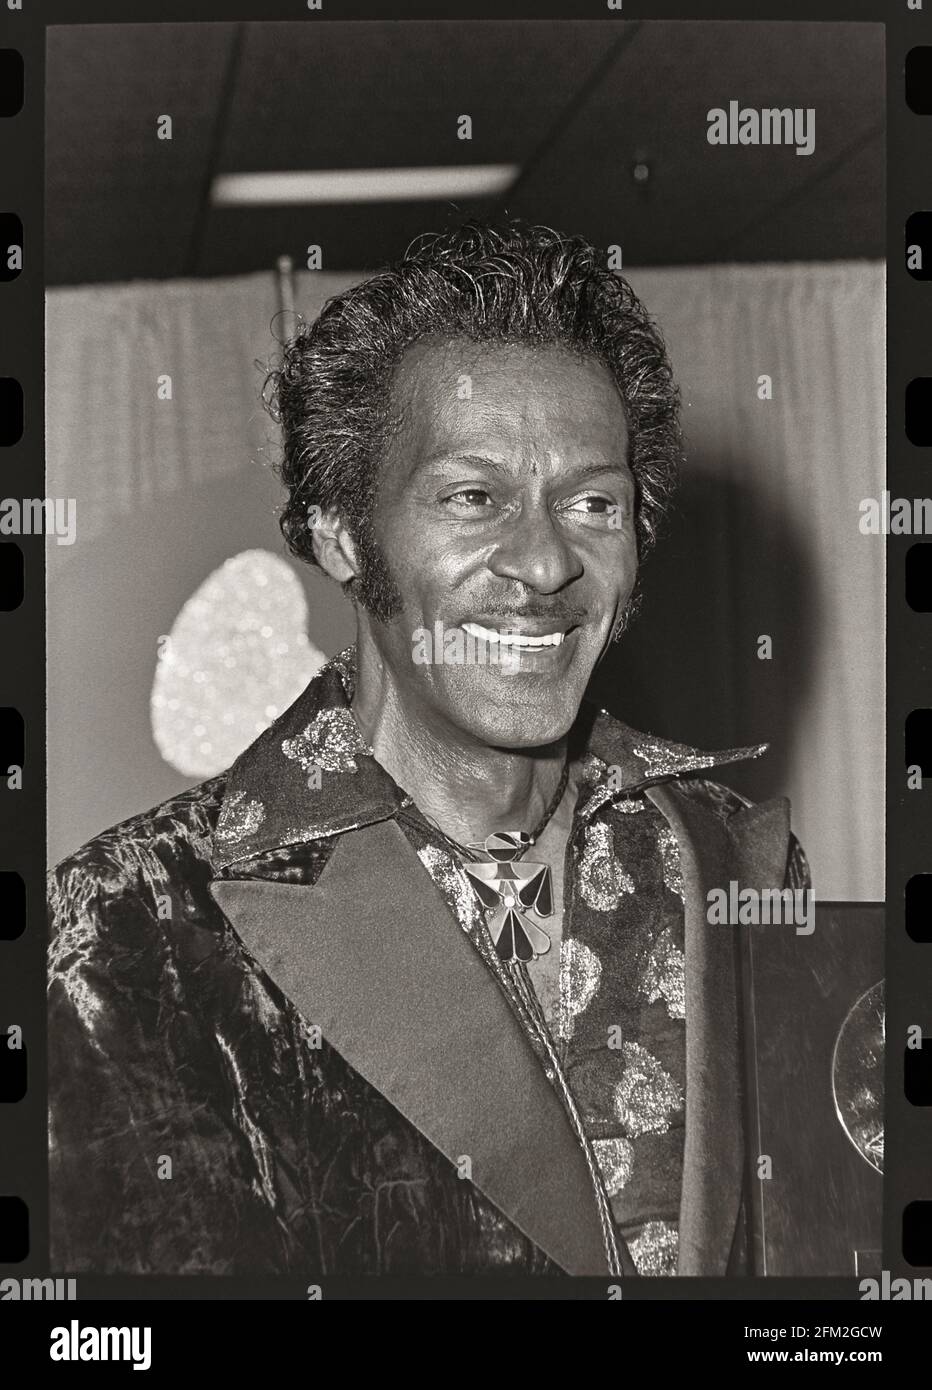 Chuck Berry, musicien de Pioneer Rock & Roll, reçoit le prix d'excellence à vie lors du 26e Grammy Awards à Los Angeles, le 28 février 1984. Image à partir d'un négatif 35 mm. Banque D'Images